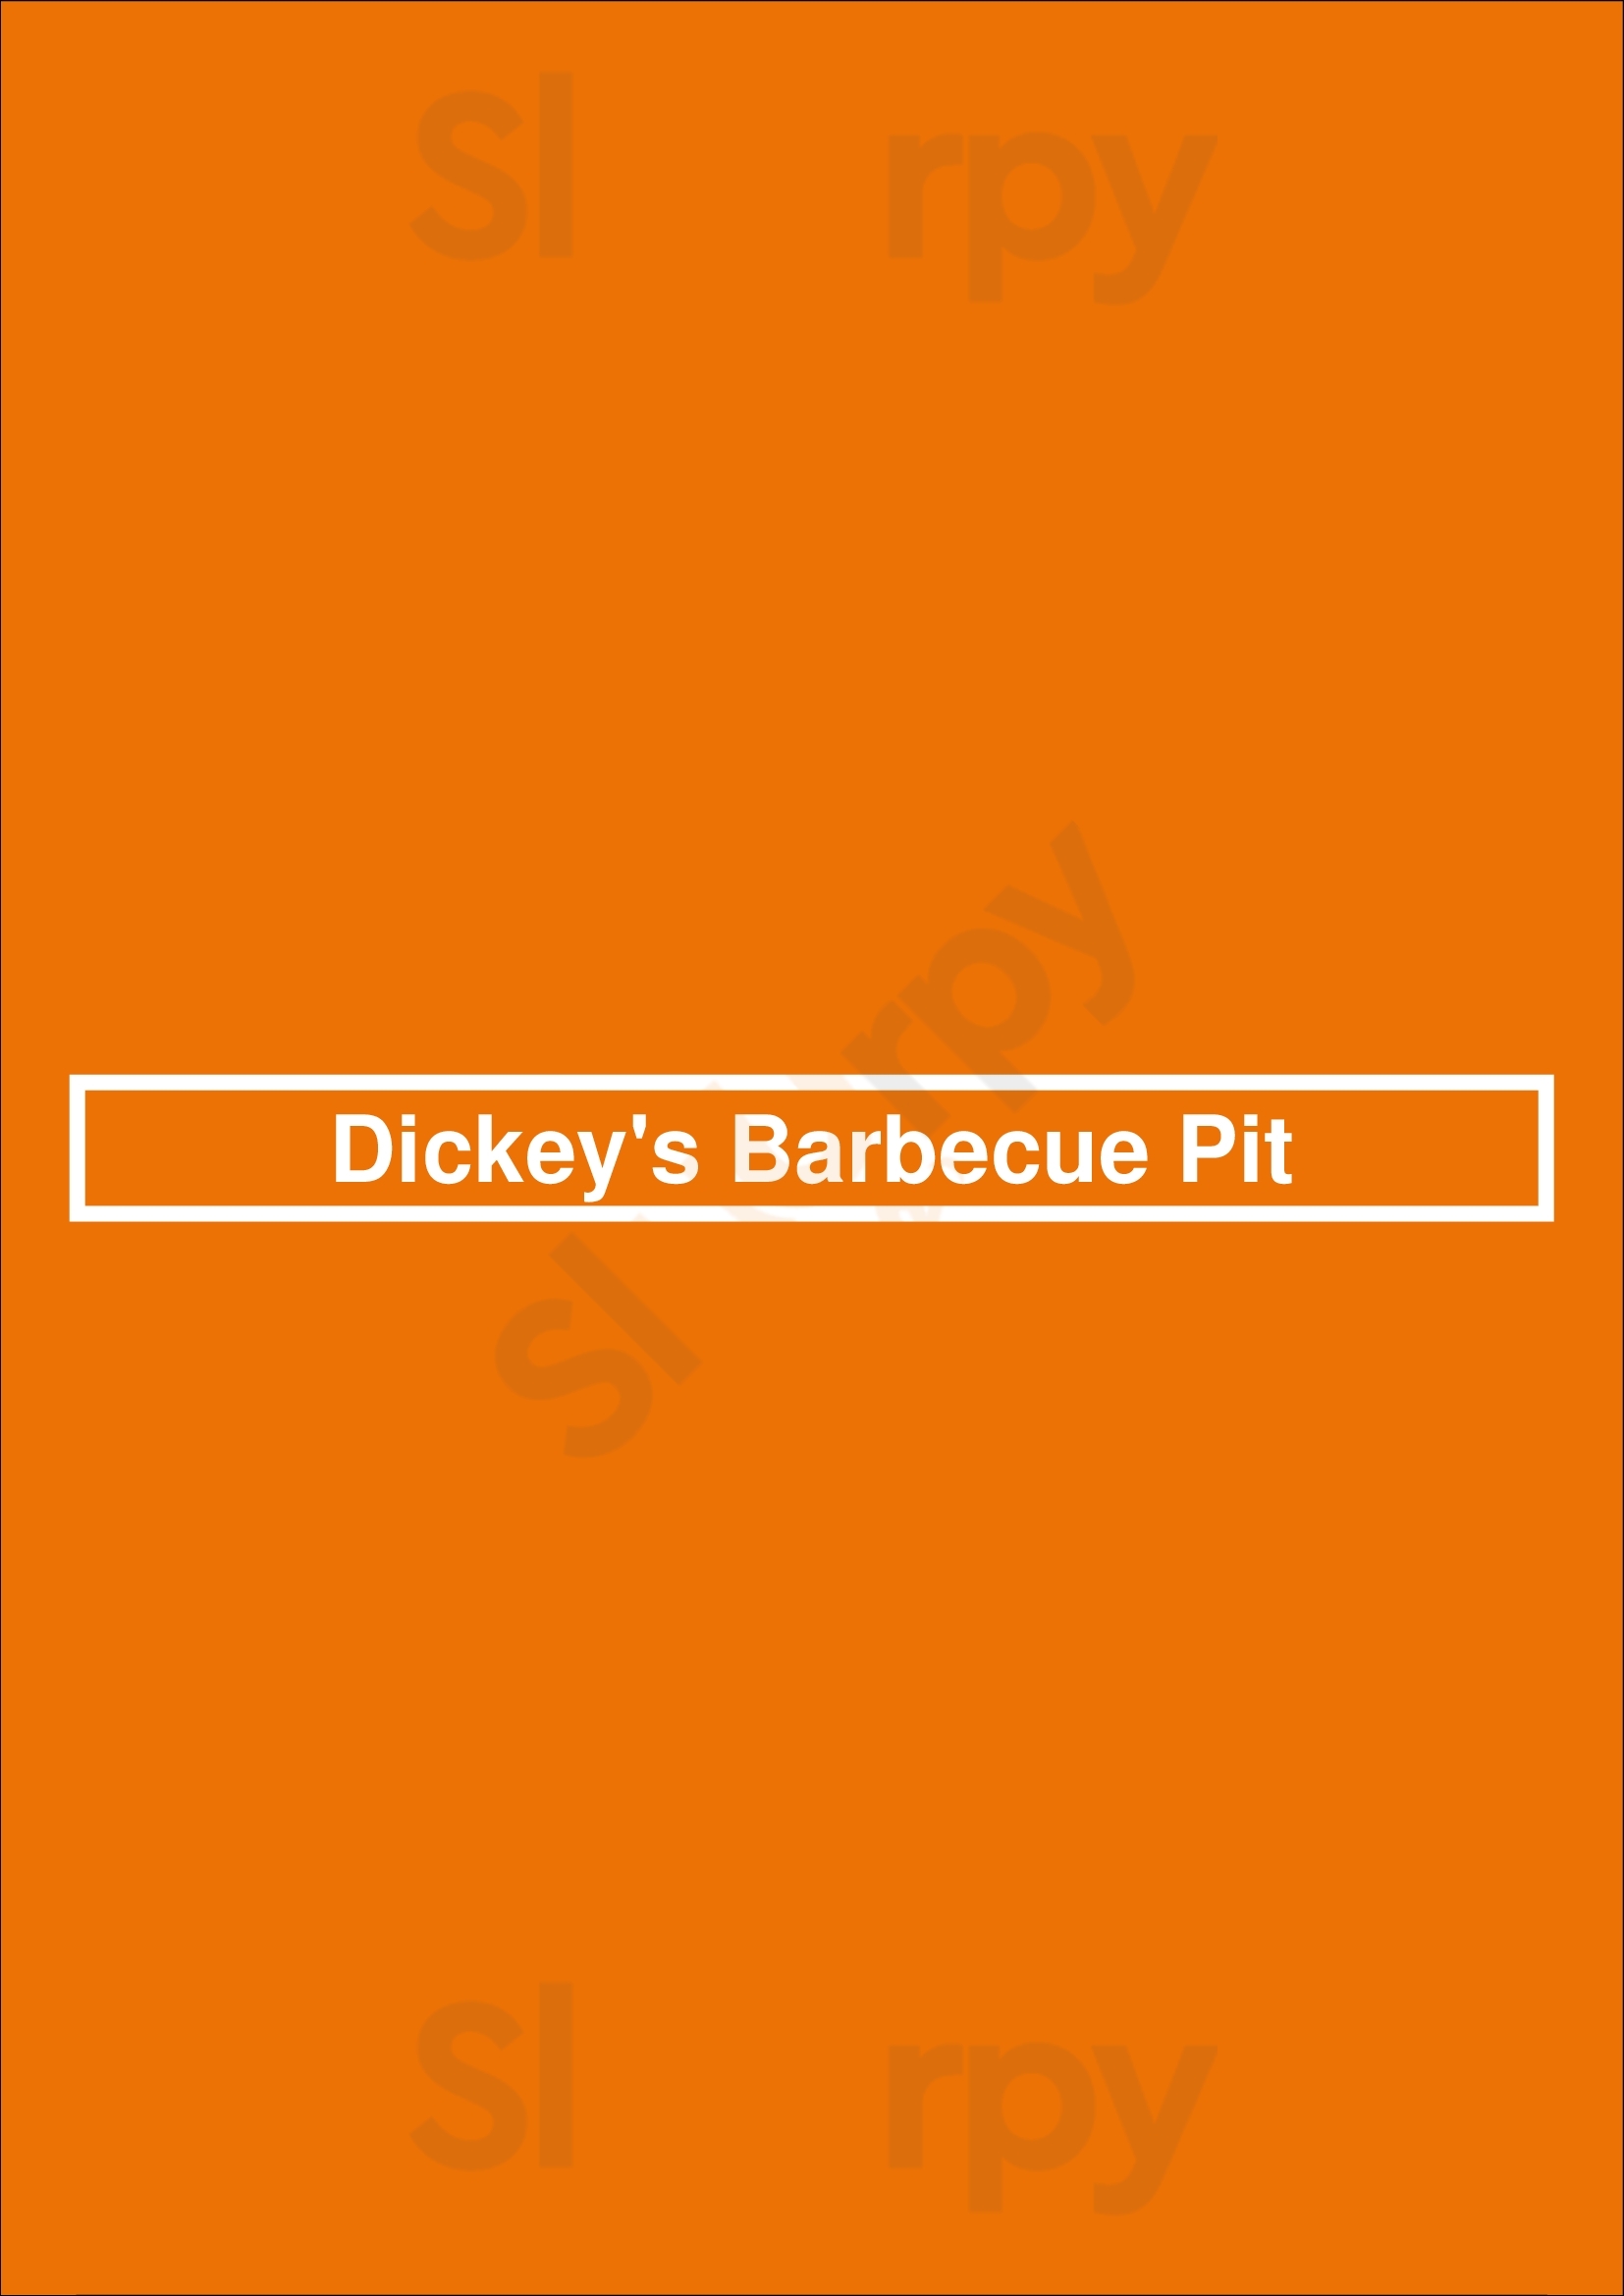 Dickey's Barbecue Pit Dallas Menu - 1